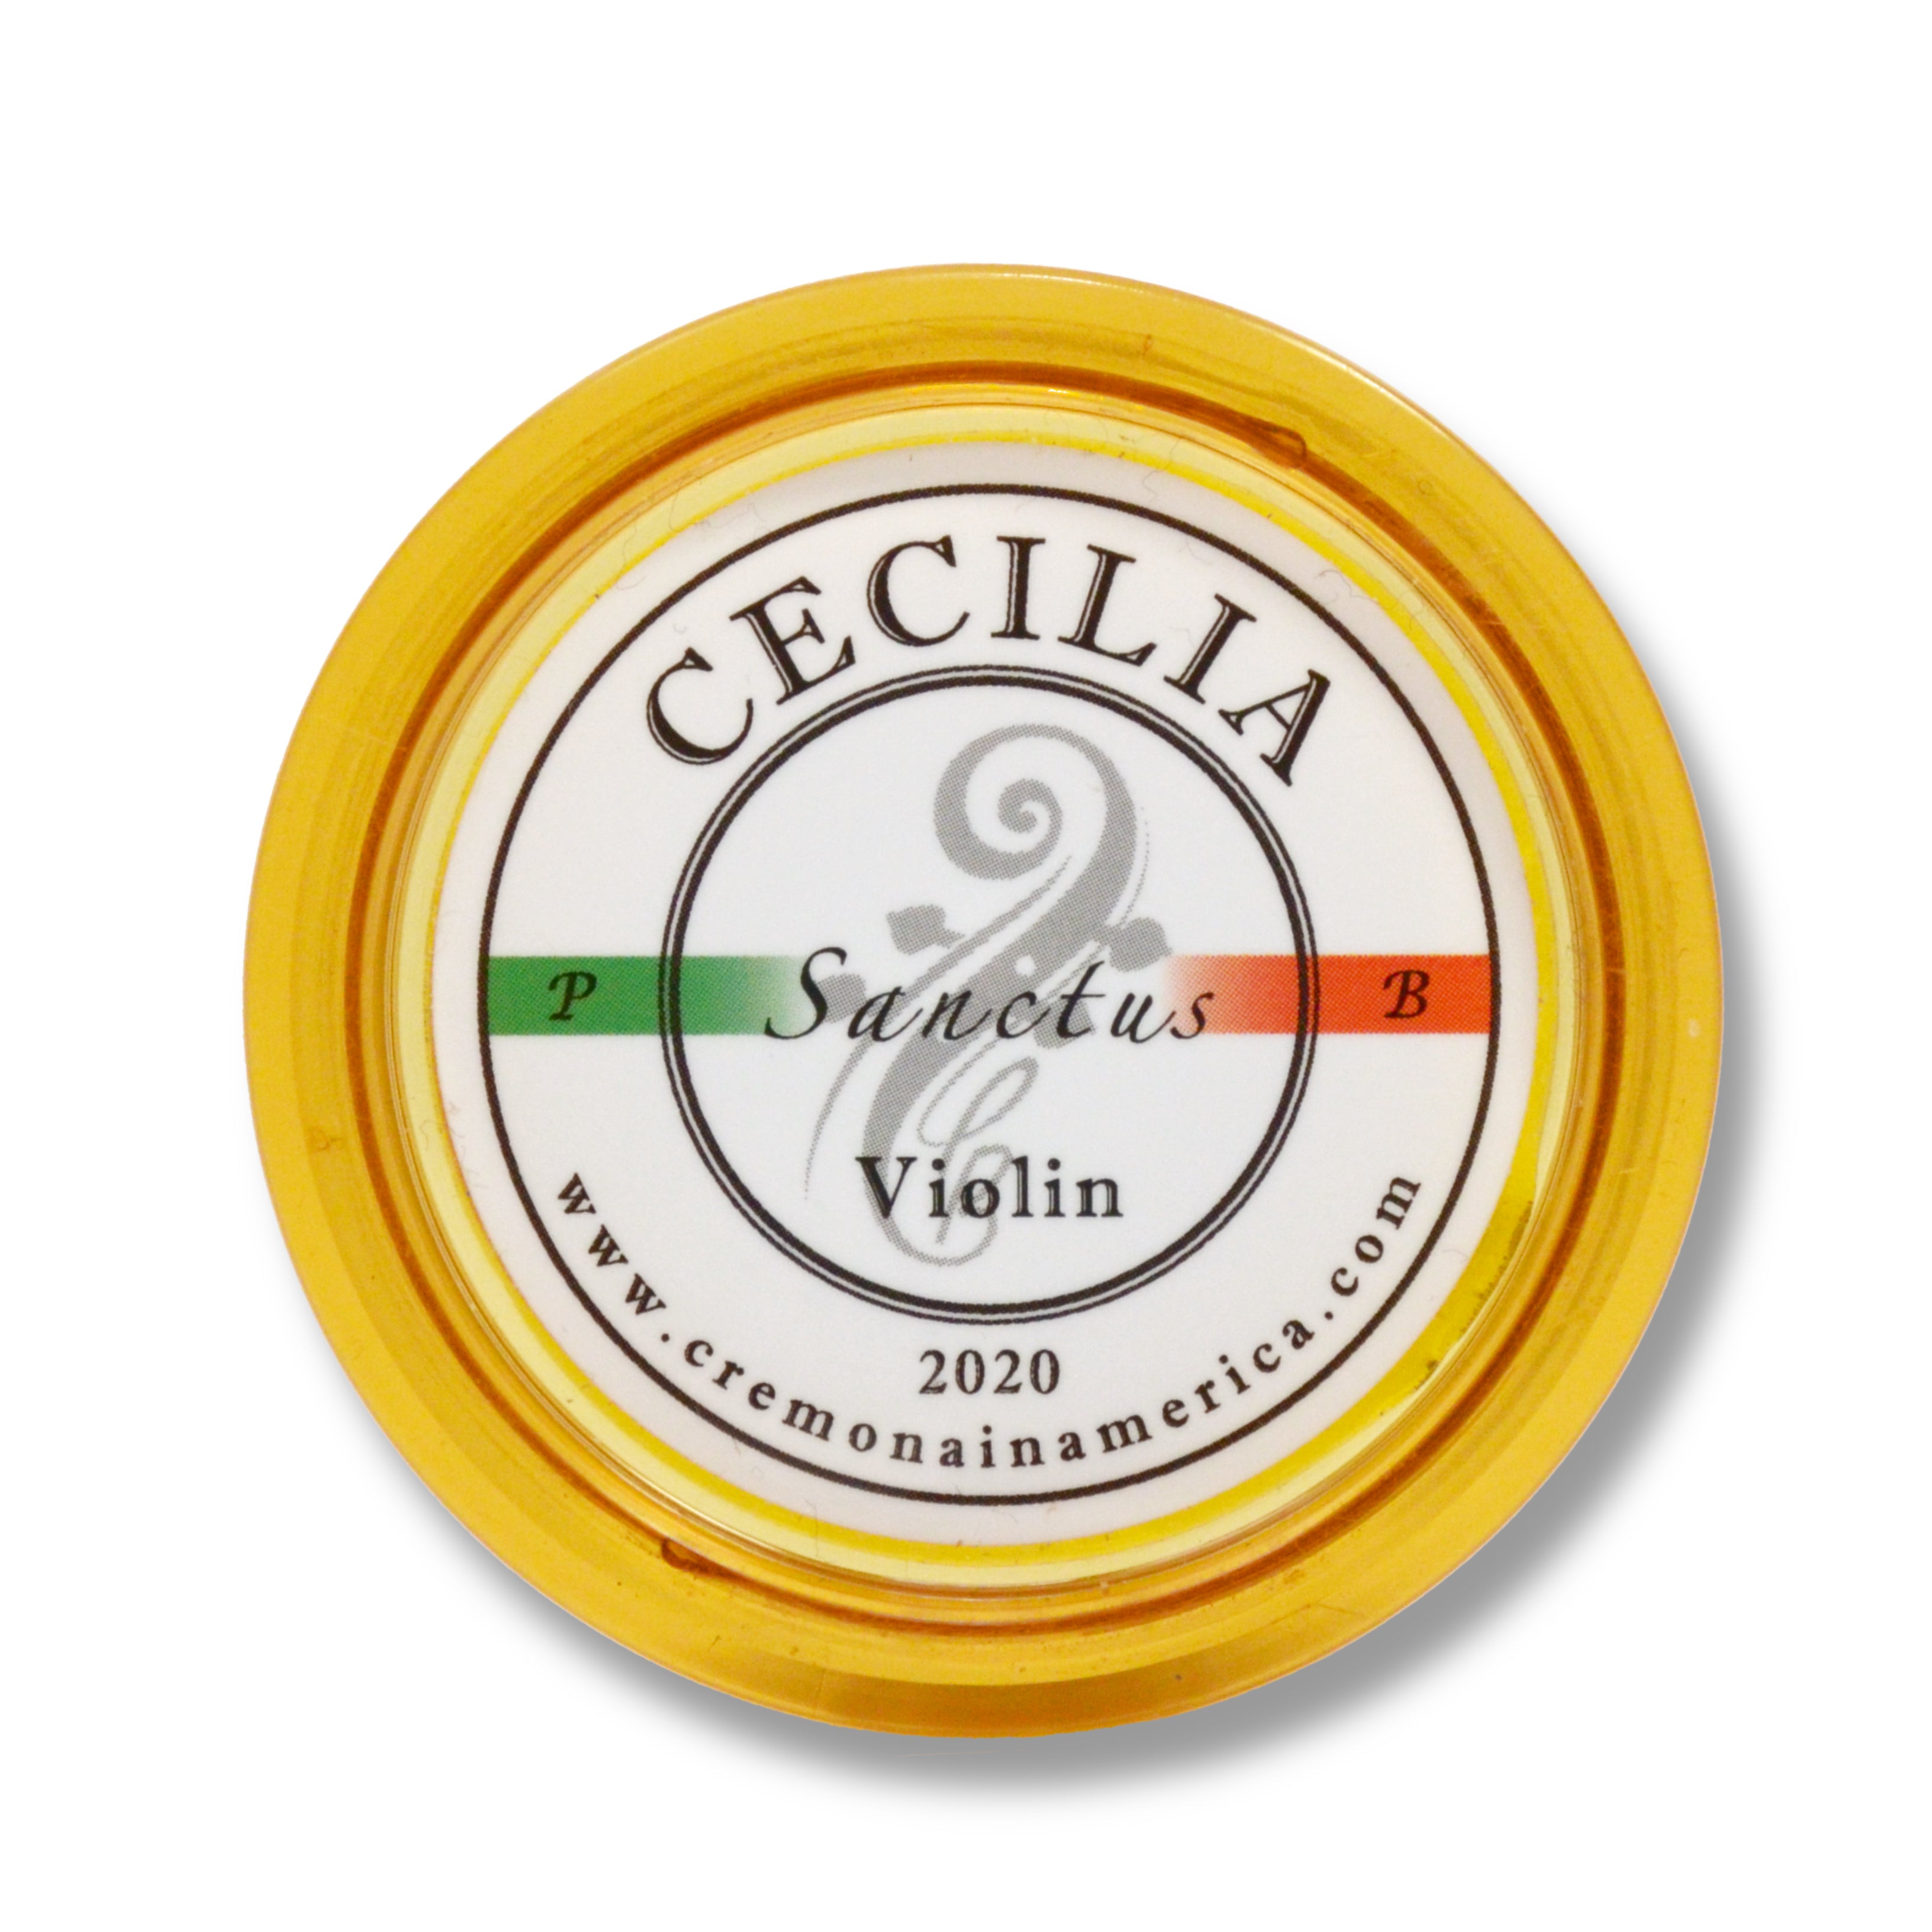 CECILIA Sanctus Violin